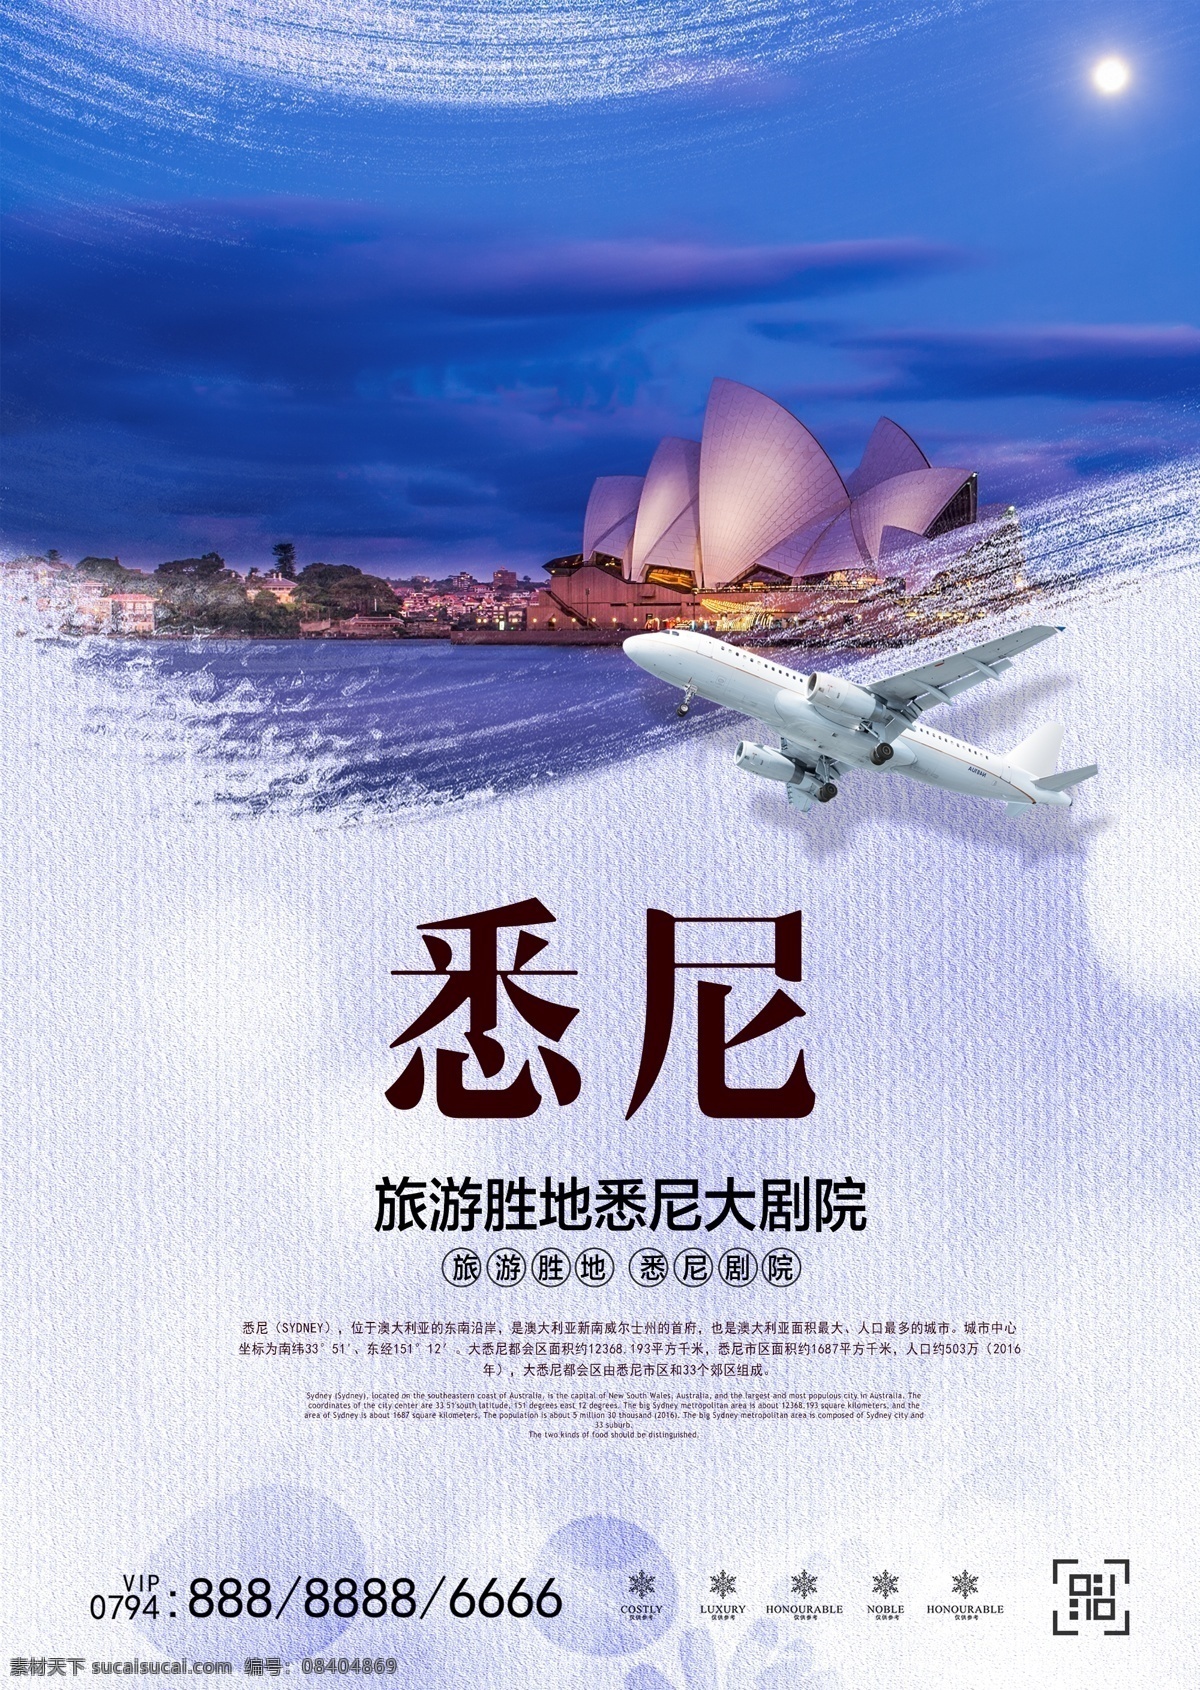 澳大利亚 悉尼 旅游 海报 免费素材 平面素材 海报模板 出国游 国外旅游 旅游海报 悉尼旅游 悉尼大剧院 澳大利亚旅游